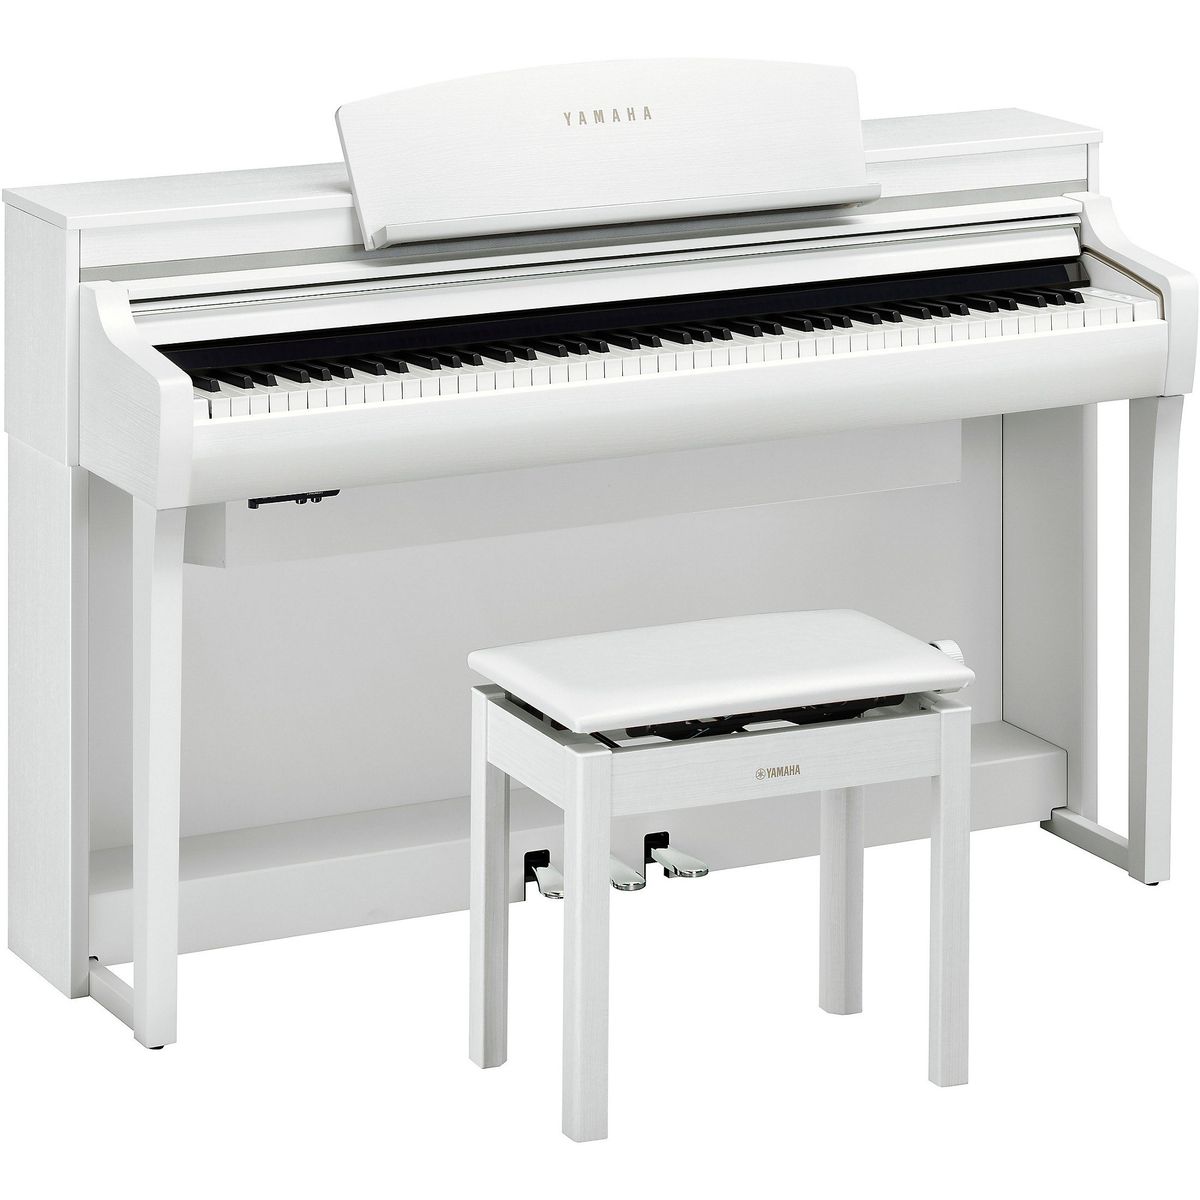 Цифровые пианино Yamaha CSP-275WH 88 клавишной клавиатурой электронных пианино крышка pleuche липучки украшен бахромой красивые